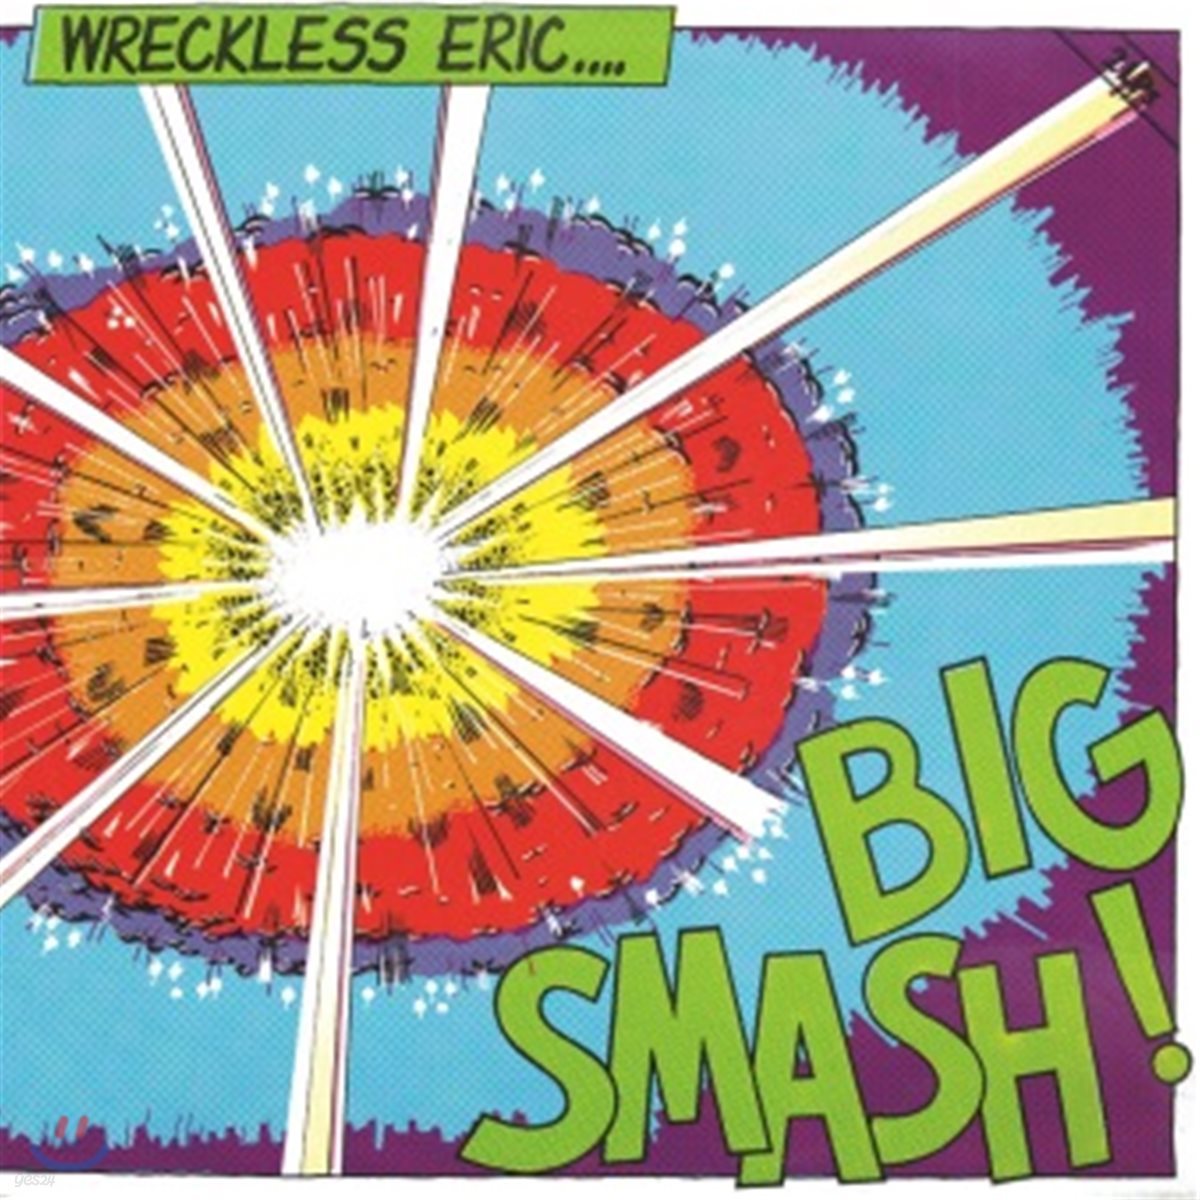 Wreckless Eric (레클리스 에릭) - Big Smash